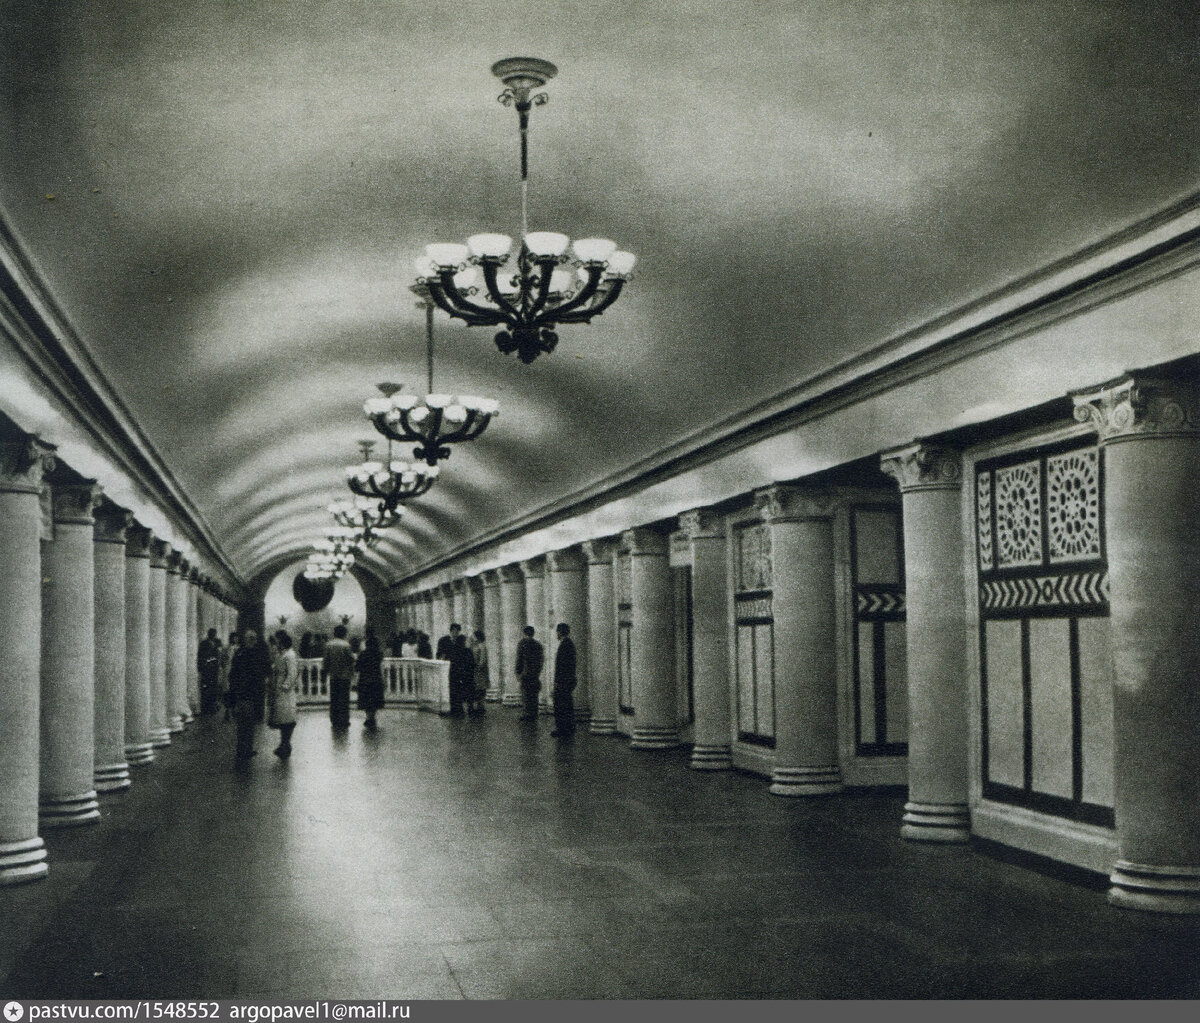 Станция метро павелецкая кольцевая. Метро Павелецкая. Центральный зал новой галереи 1888.